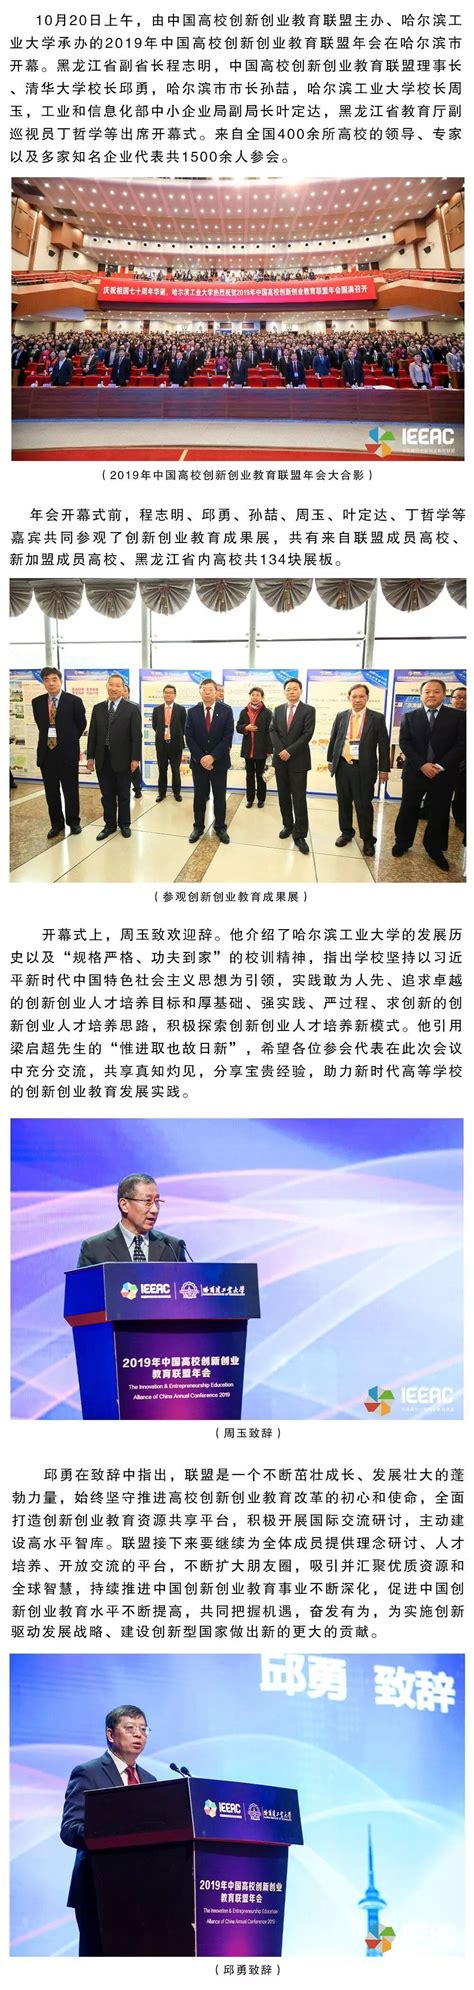 学校召开2018中国高校创新创业教育联盟年会协调会-西安交通大学新闻网